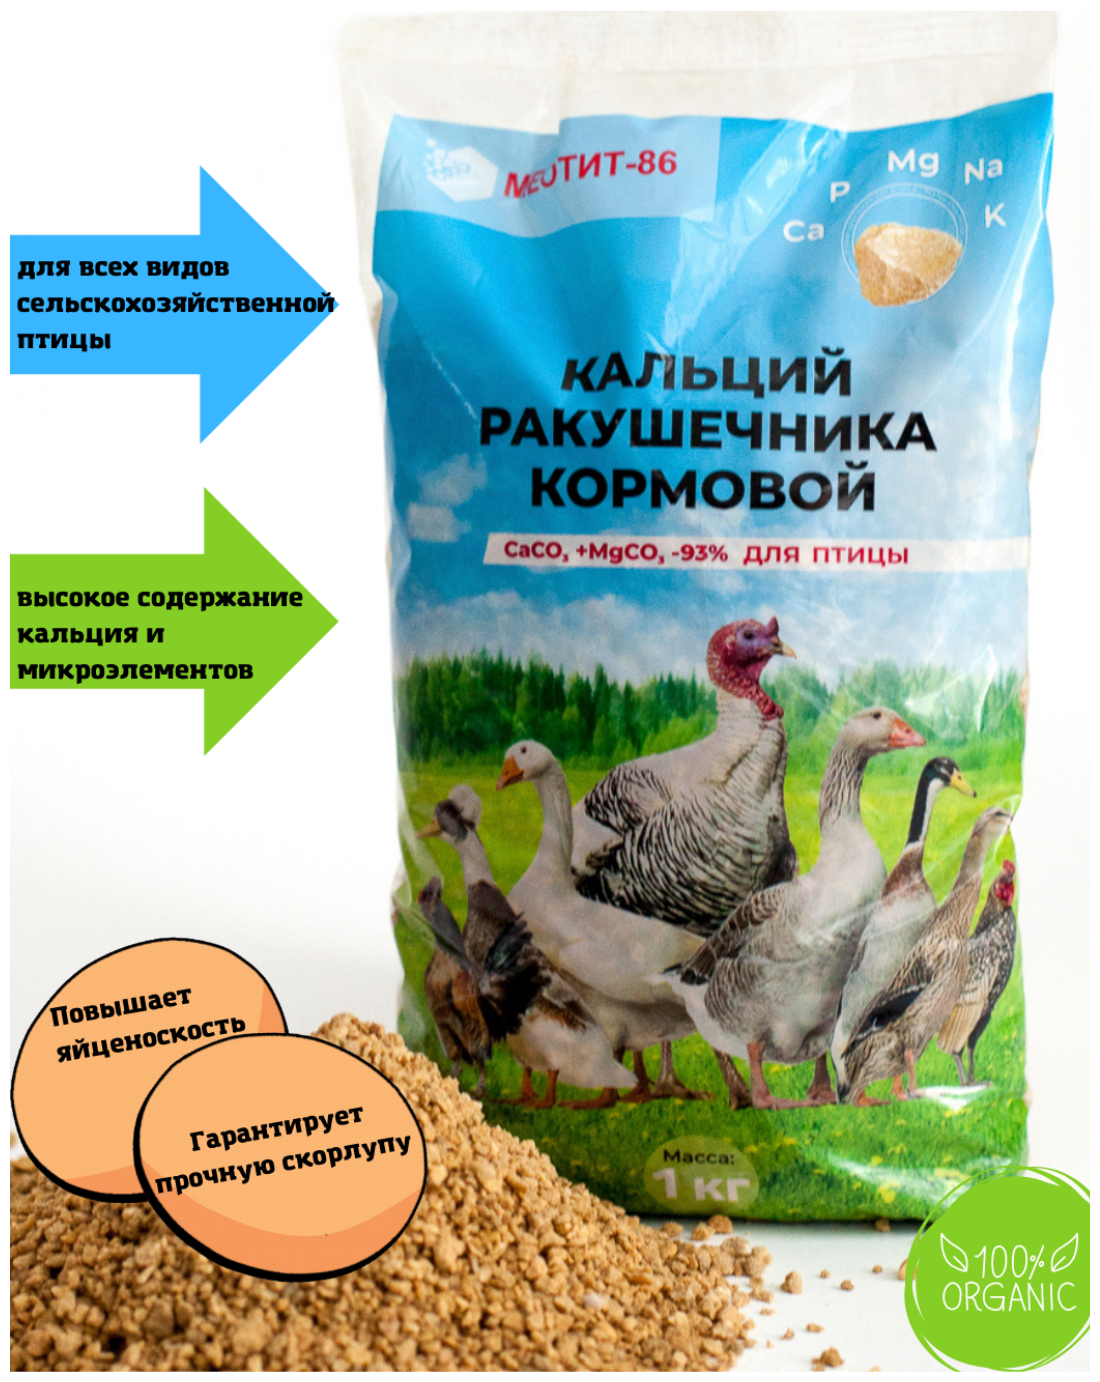 Кормовая добавка, крымский ракушняк Меотит-86 для с/х птицы минеральный органический комплекс для кур,уток,гусей,индеек 1кг